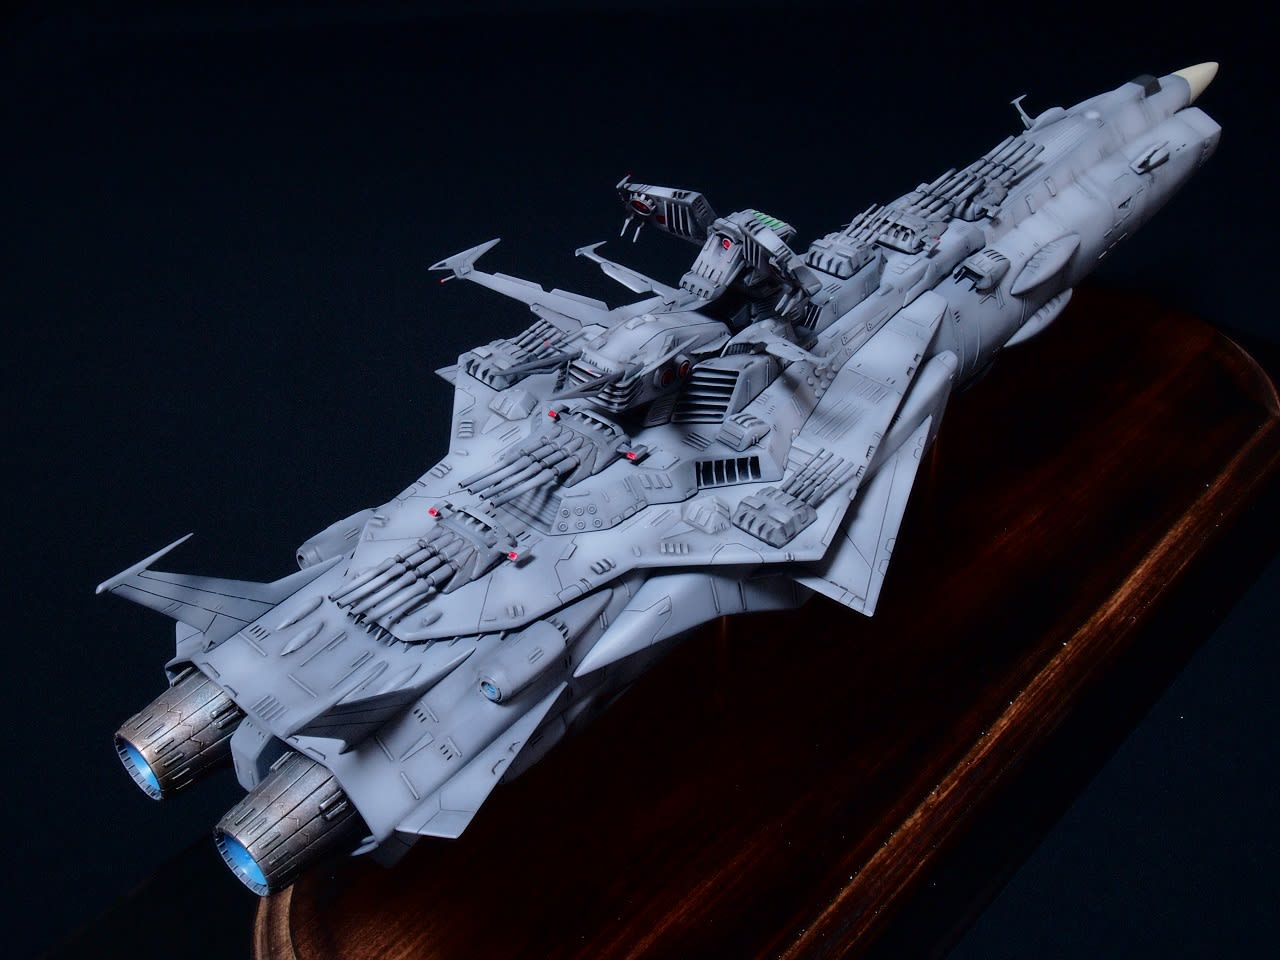 Space battleship yamato shunran